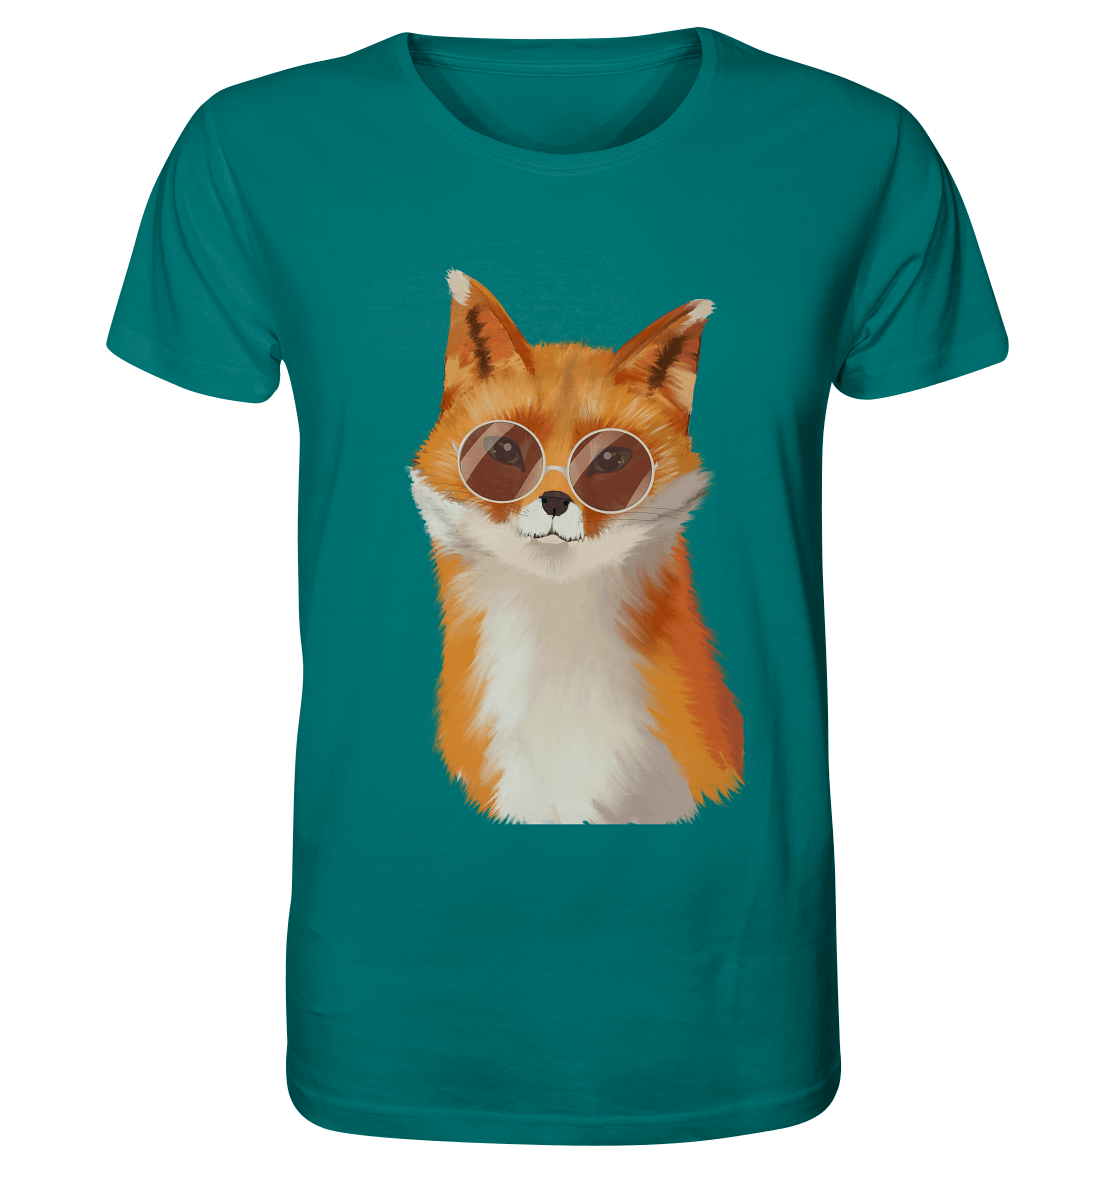 Herren T-Shirt "Fuchs" mit Fuchs Print